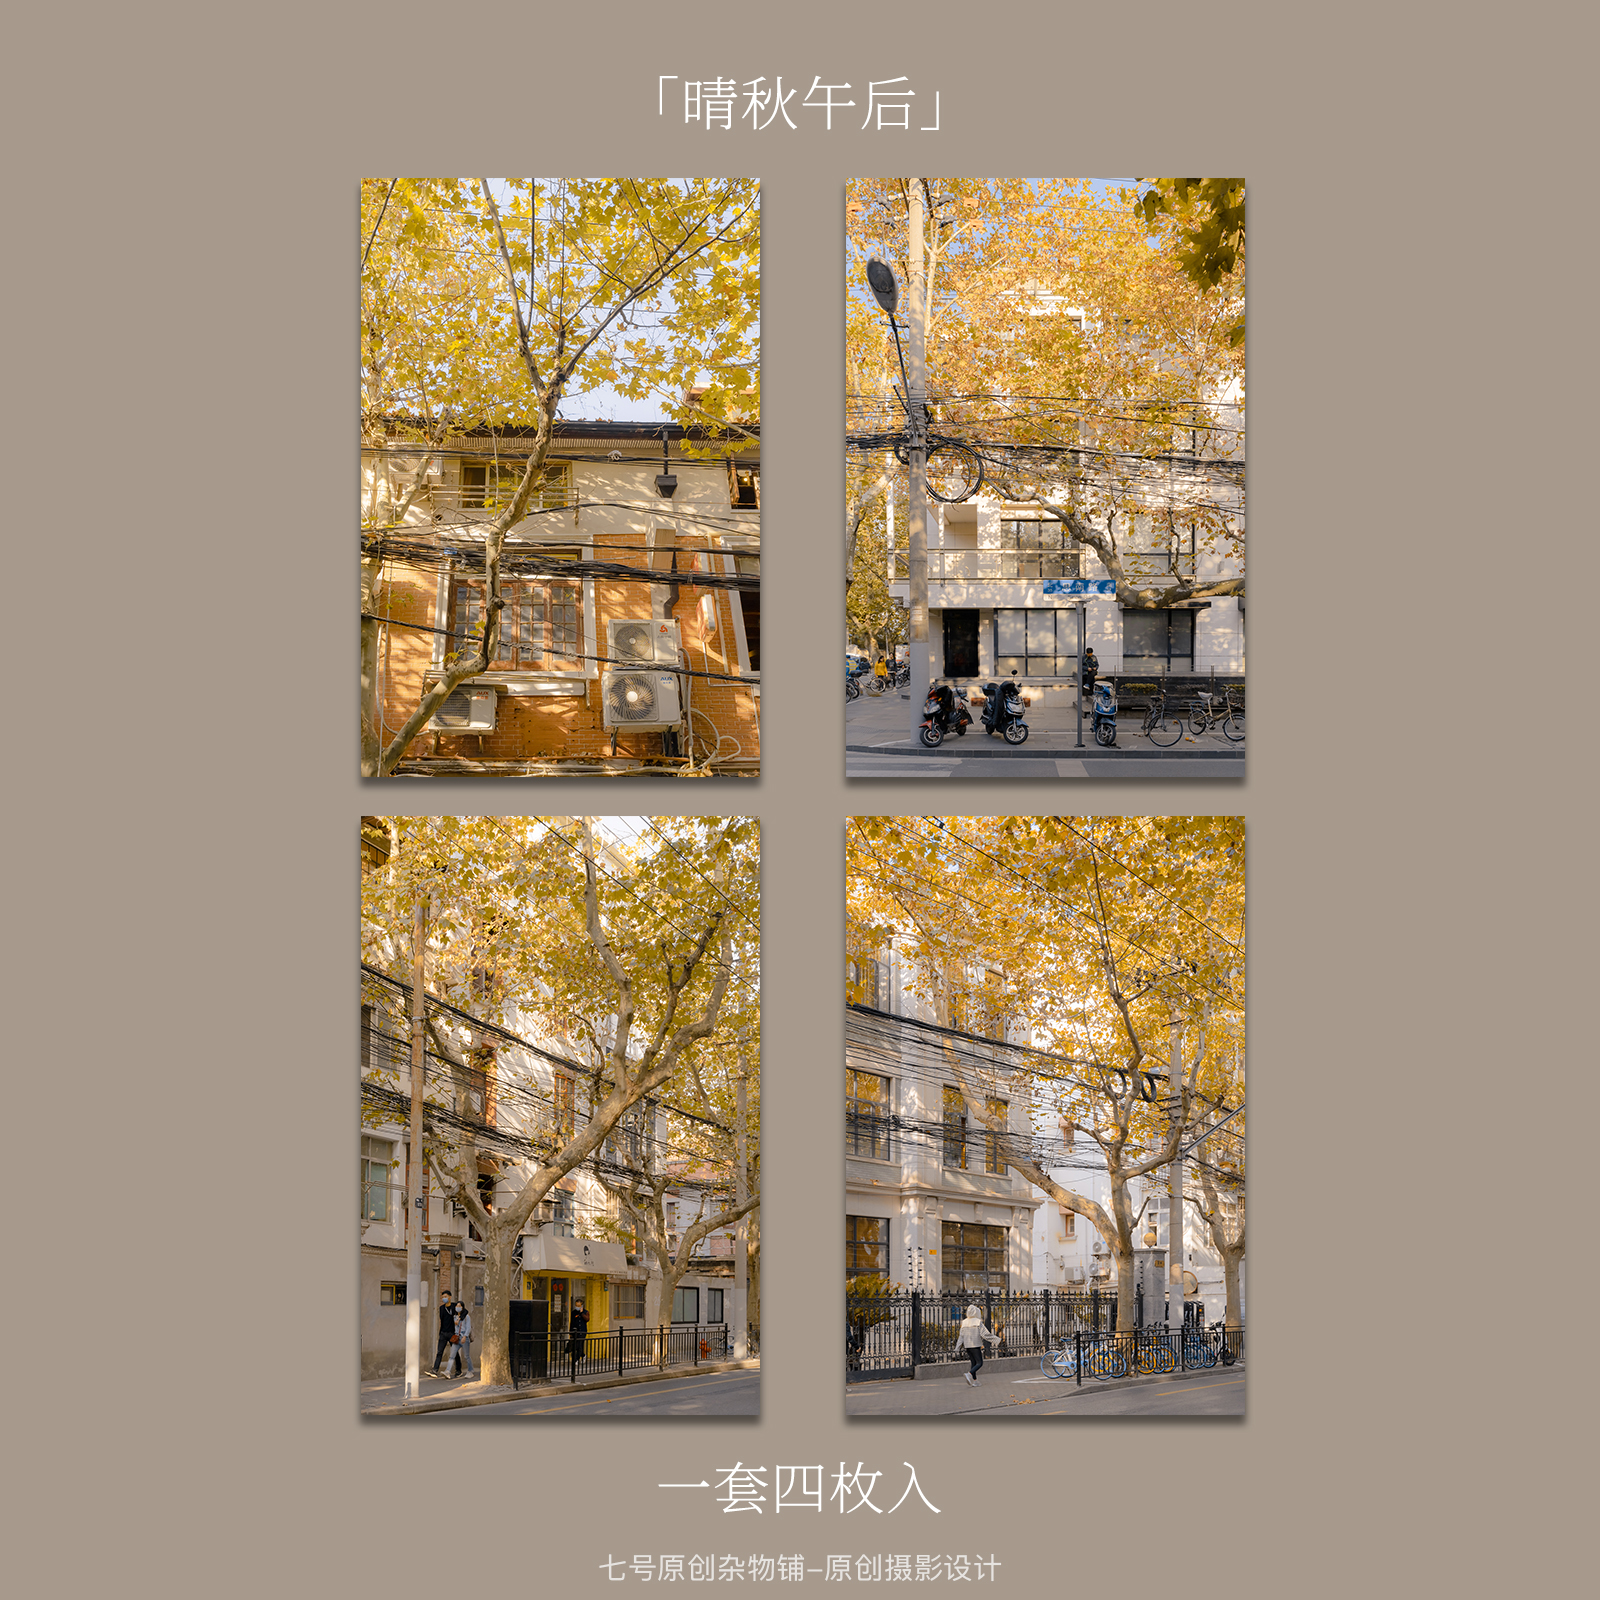 七号原创「晴秋午后」摄影明信片贺卡上海街头梧桐树秋天景色卡片